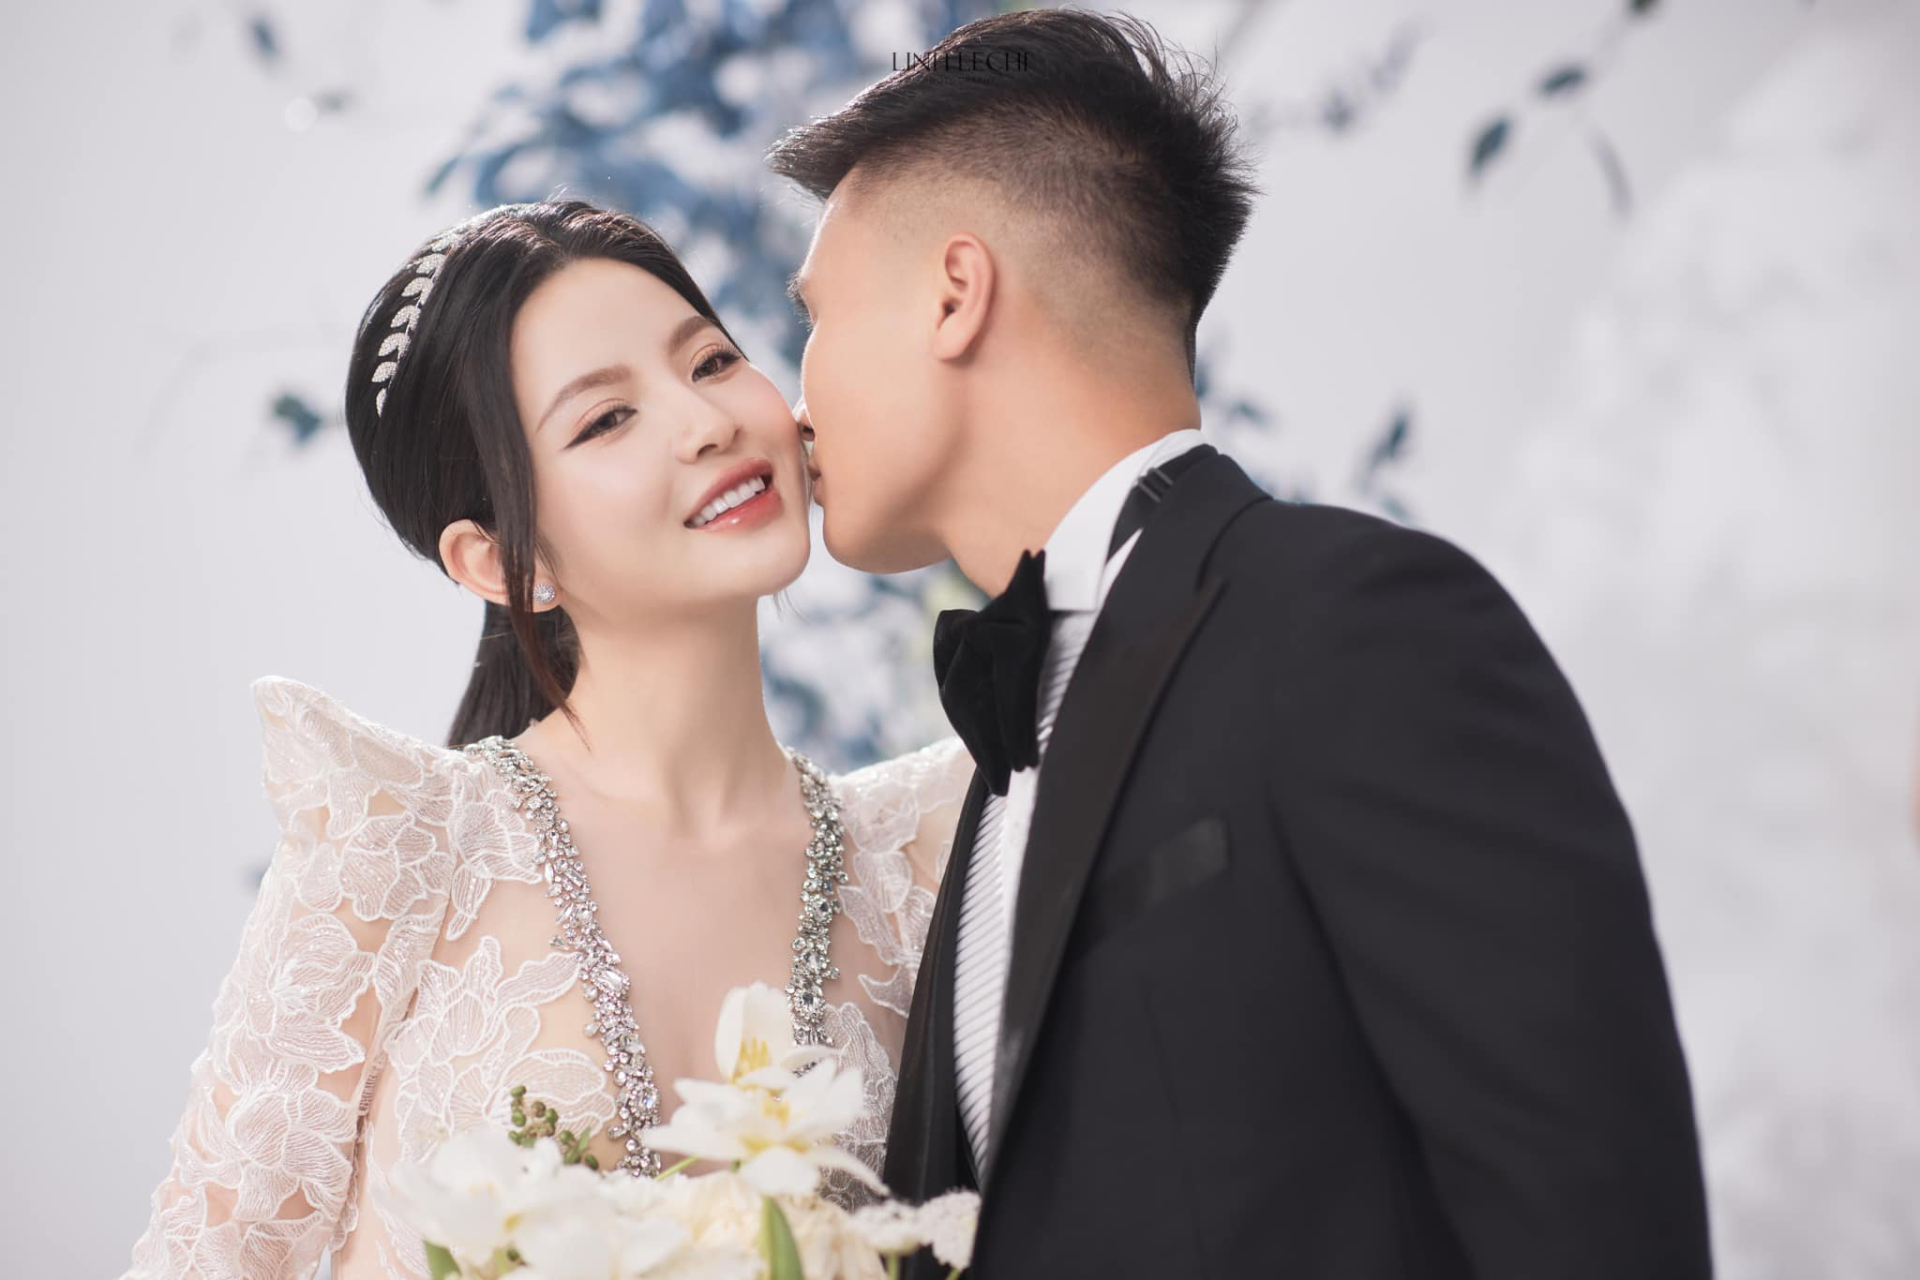 Nhiếp ảnh gia trong vụ lùm xùm ảnh cưới của Quang Hải - Chu Thanh Huyền có 'profile' cực đỉnh là ai? - ảnh 2